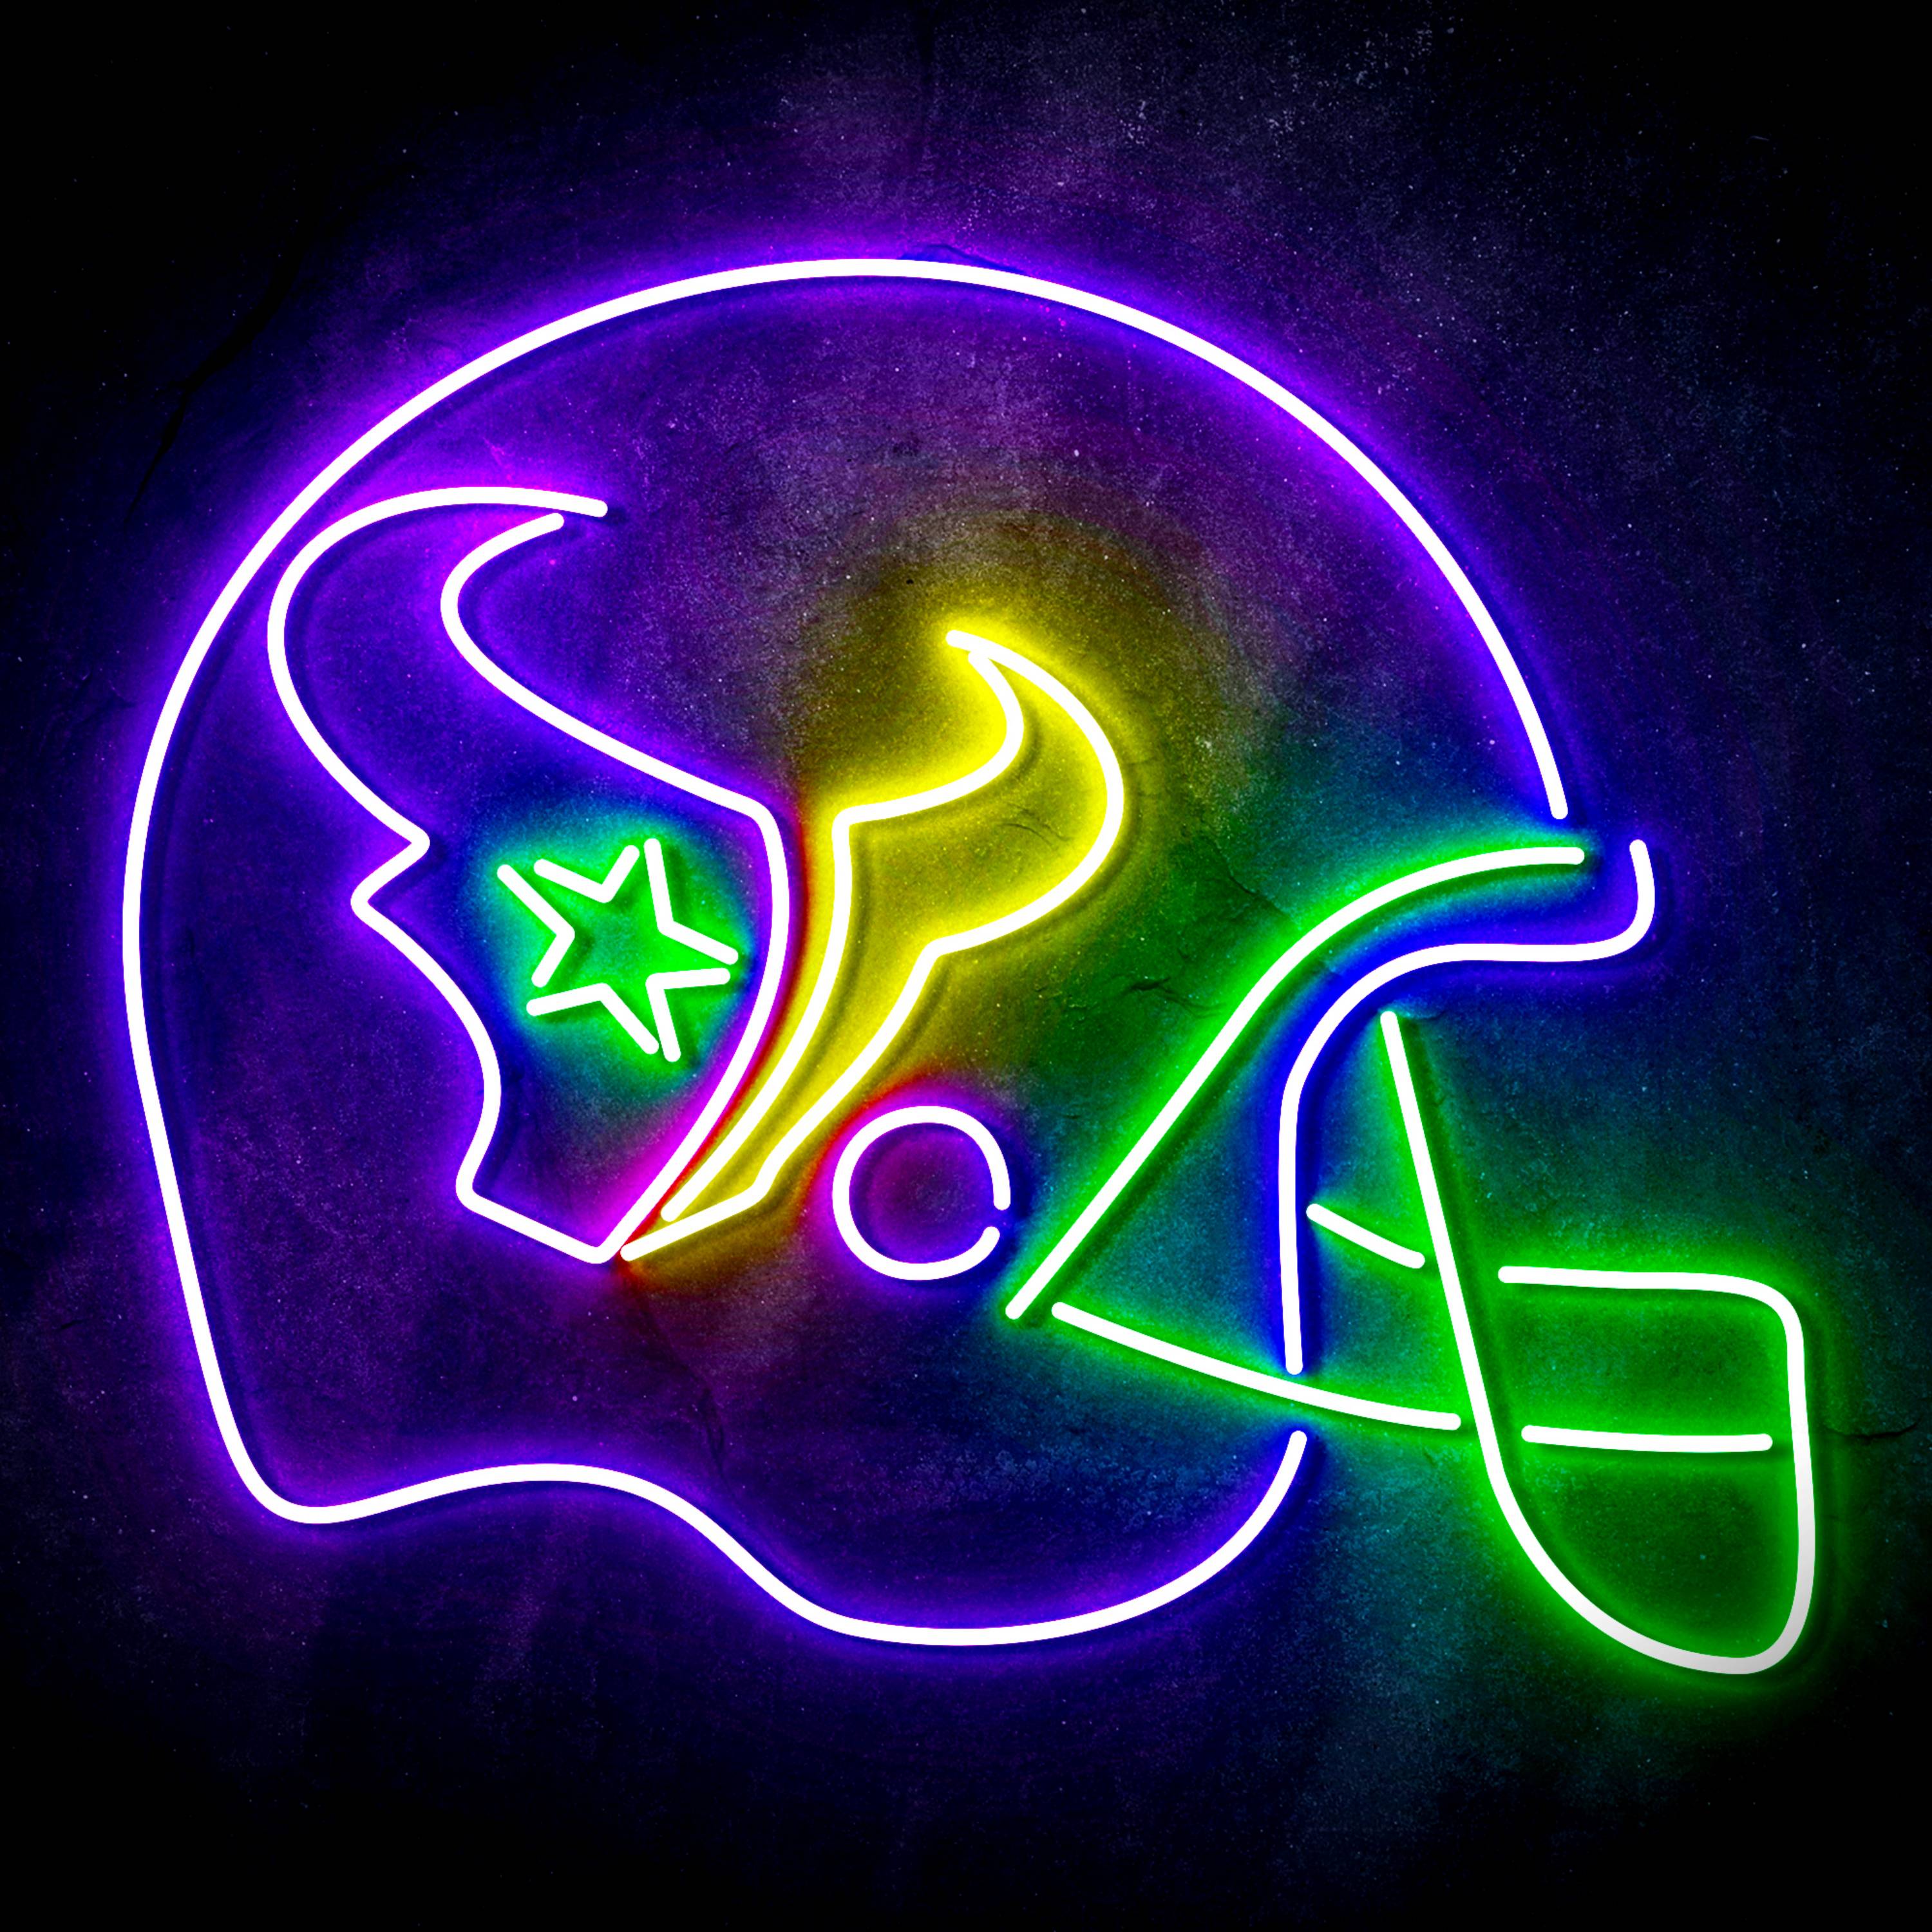 NFL Helmet Houston Texans LED Neon Sign